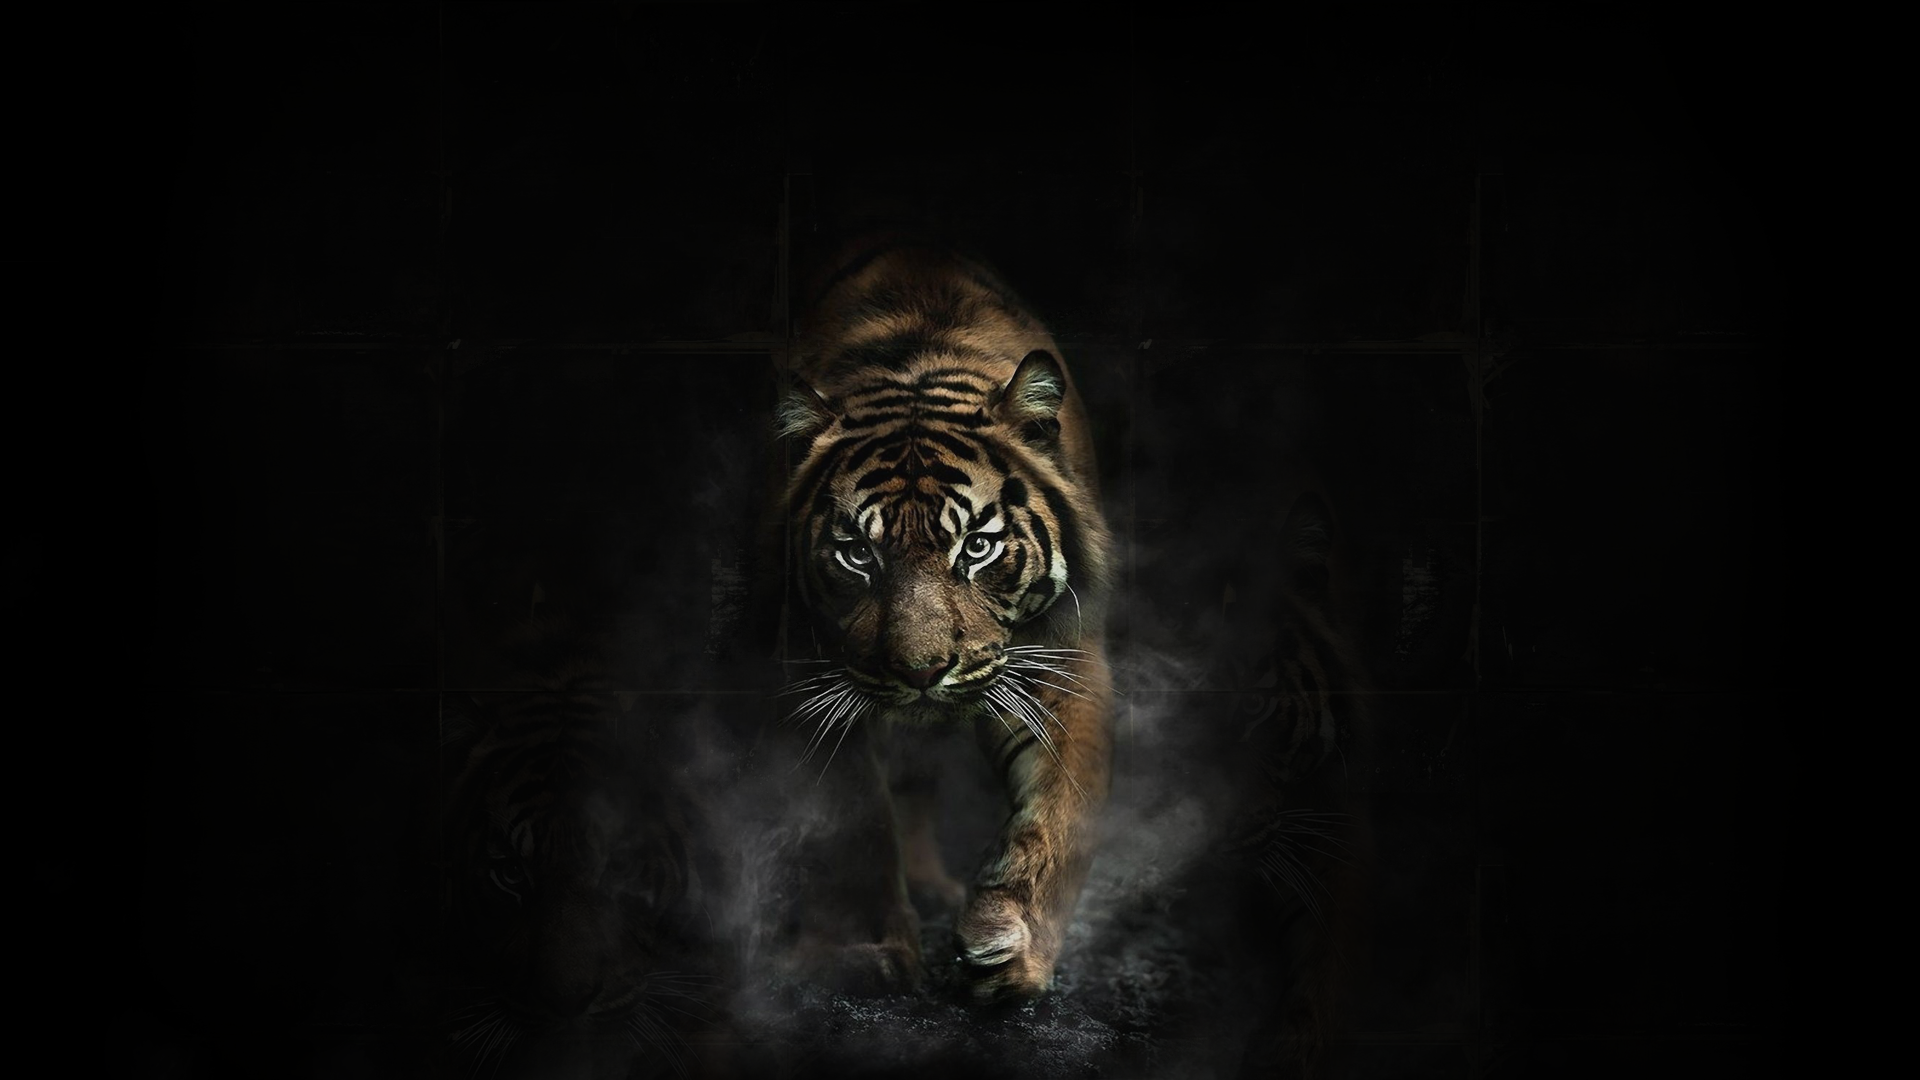 General 1920x1080 tiger animals dark artwork big cats mammals simple background black background